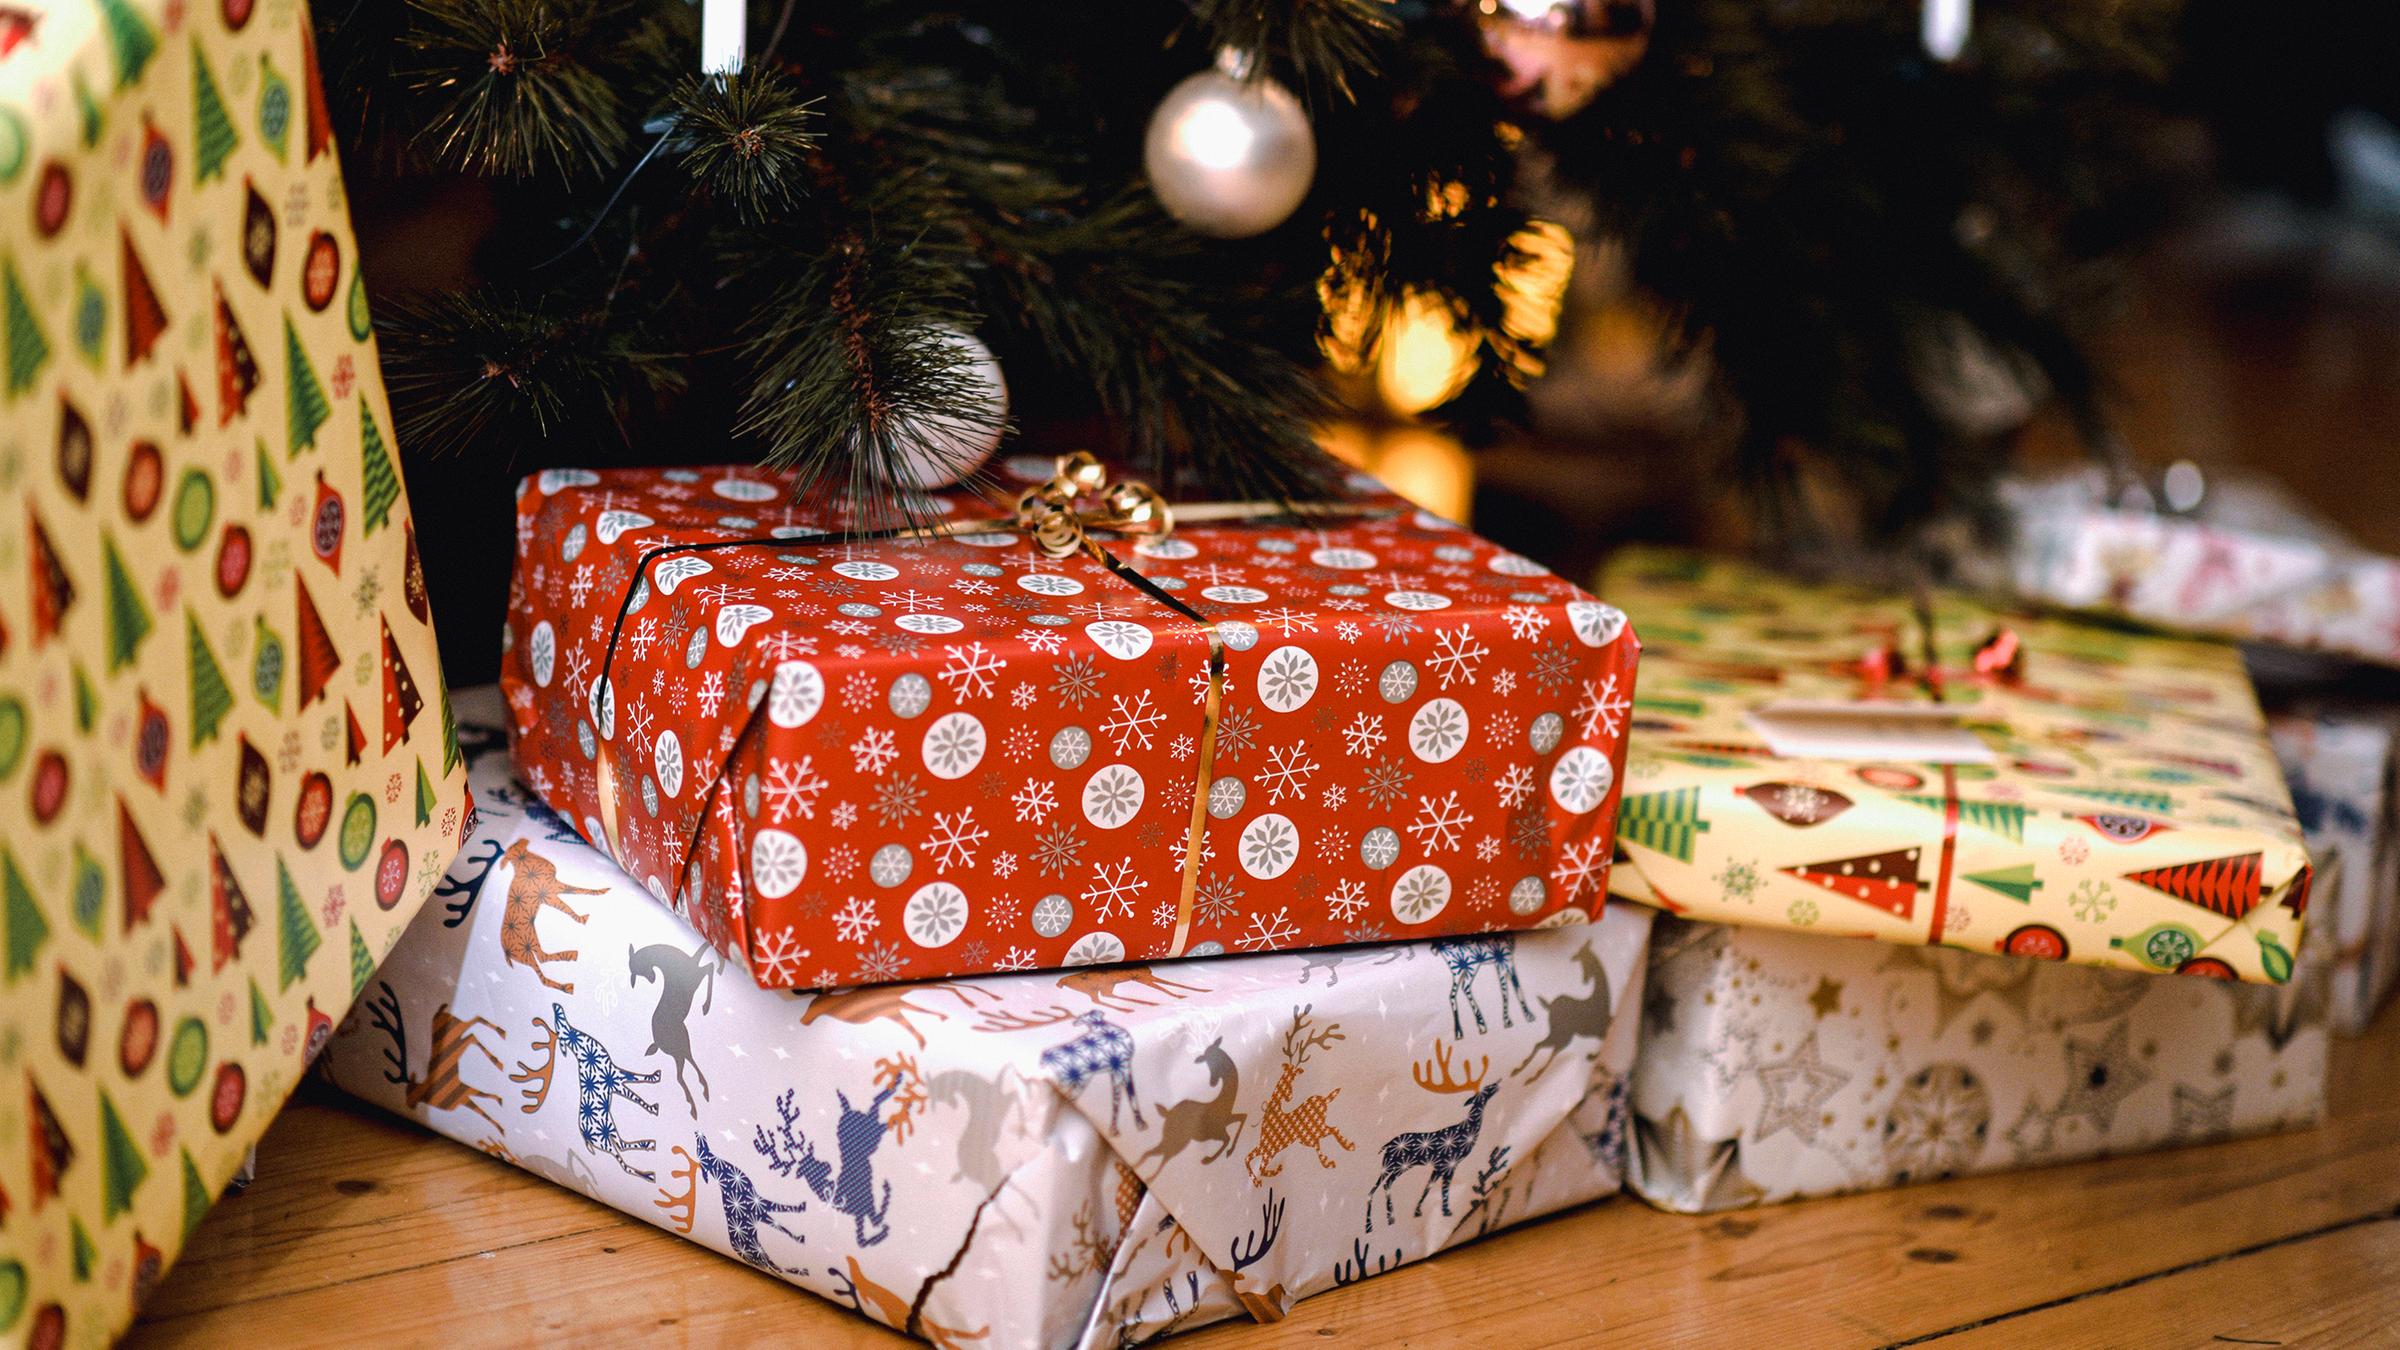 Weihnachtsgeschenke 30 Prozent günstiger kaufen: Starke Rabattaktion bei